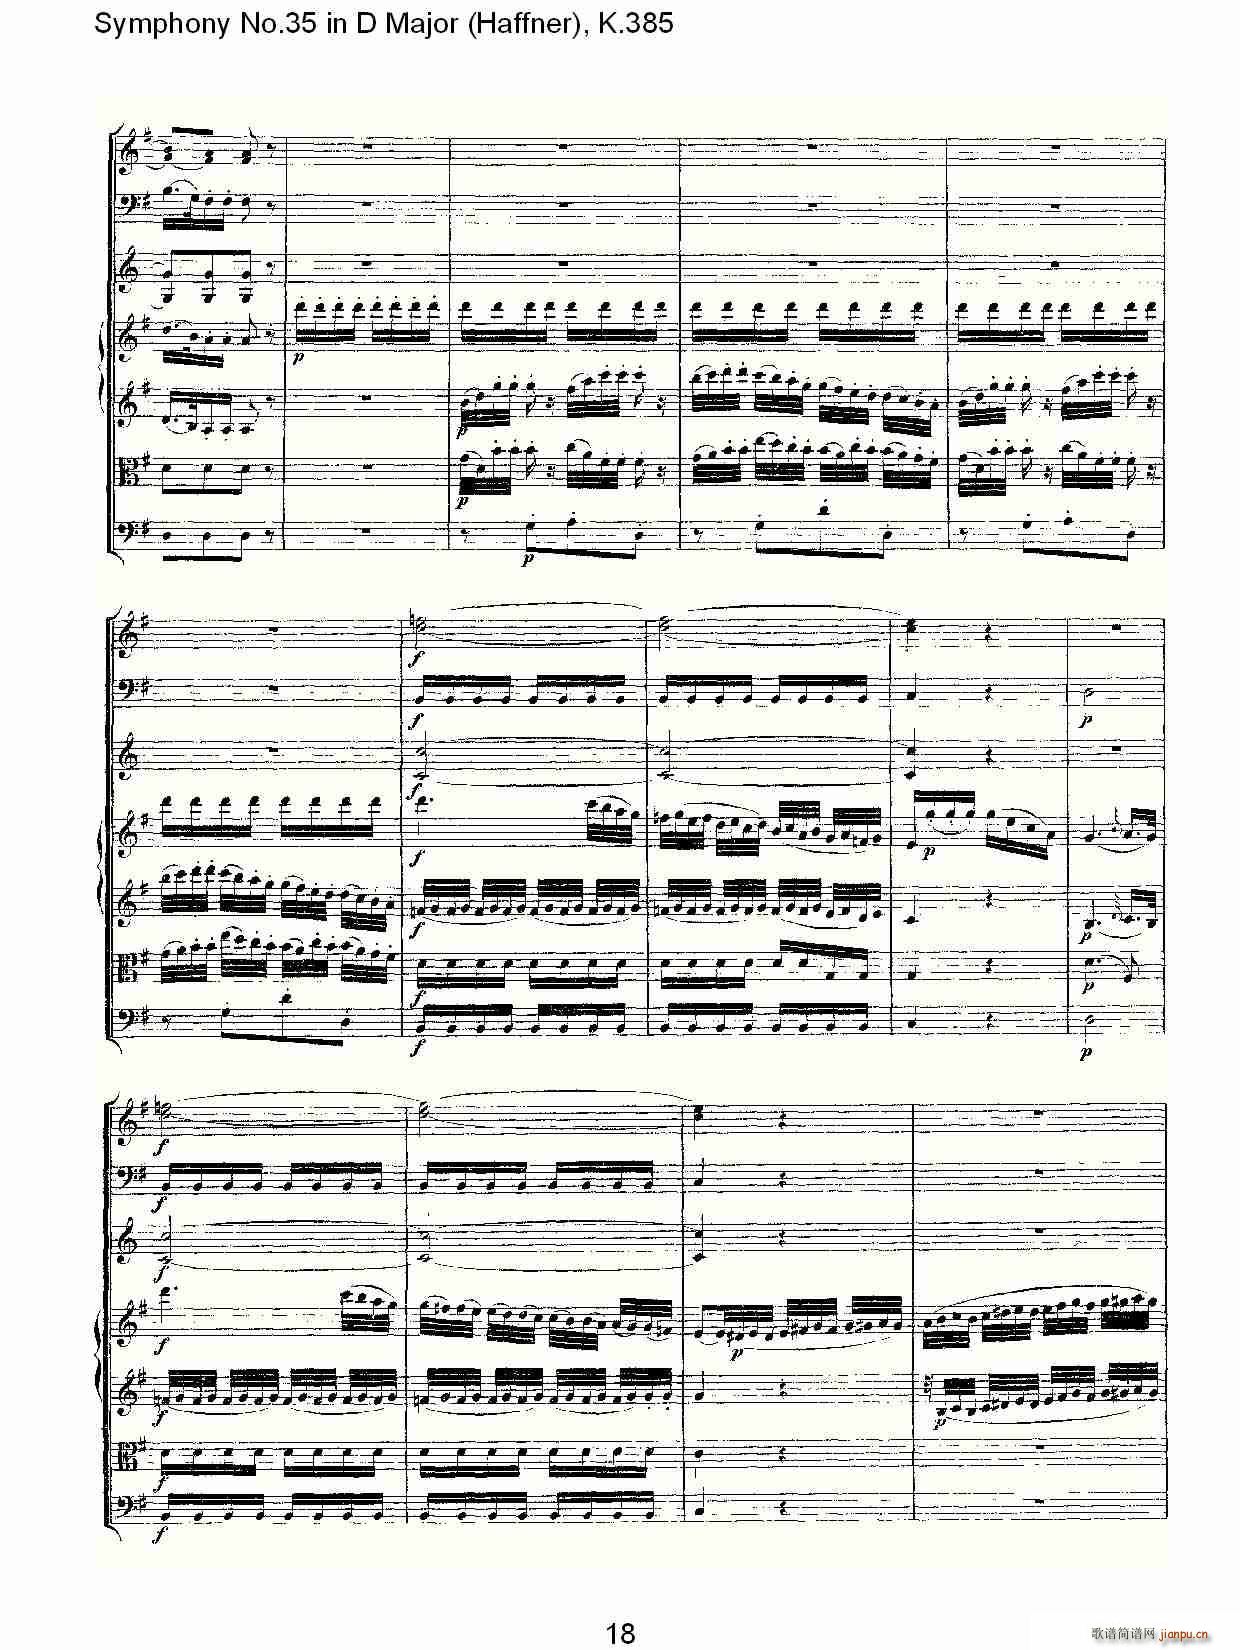 Symphony No.35 in D Major, K.385(ʮּ)18